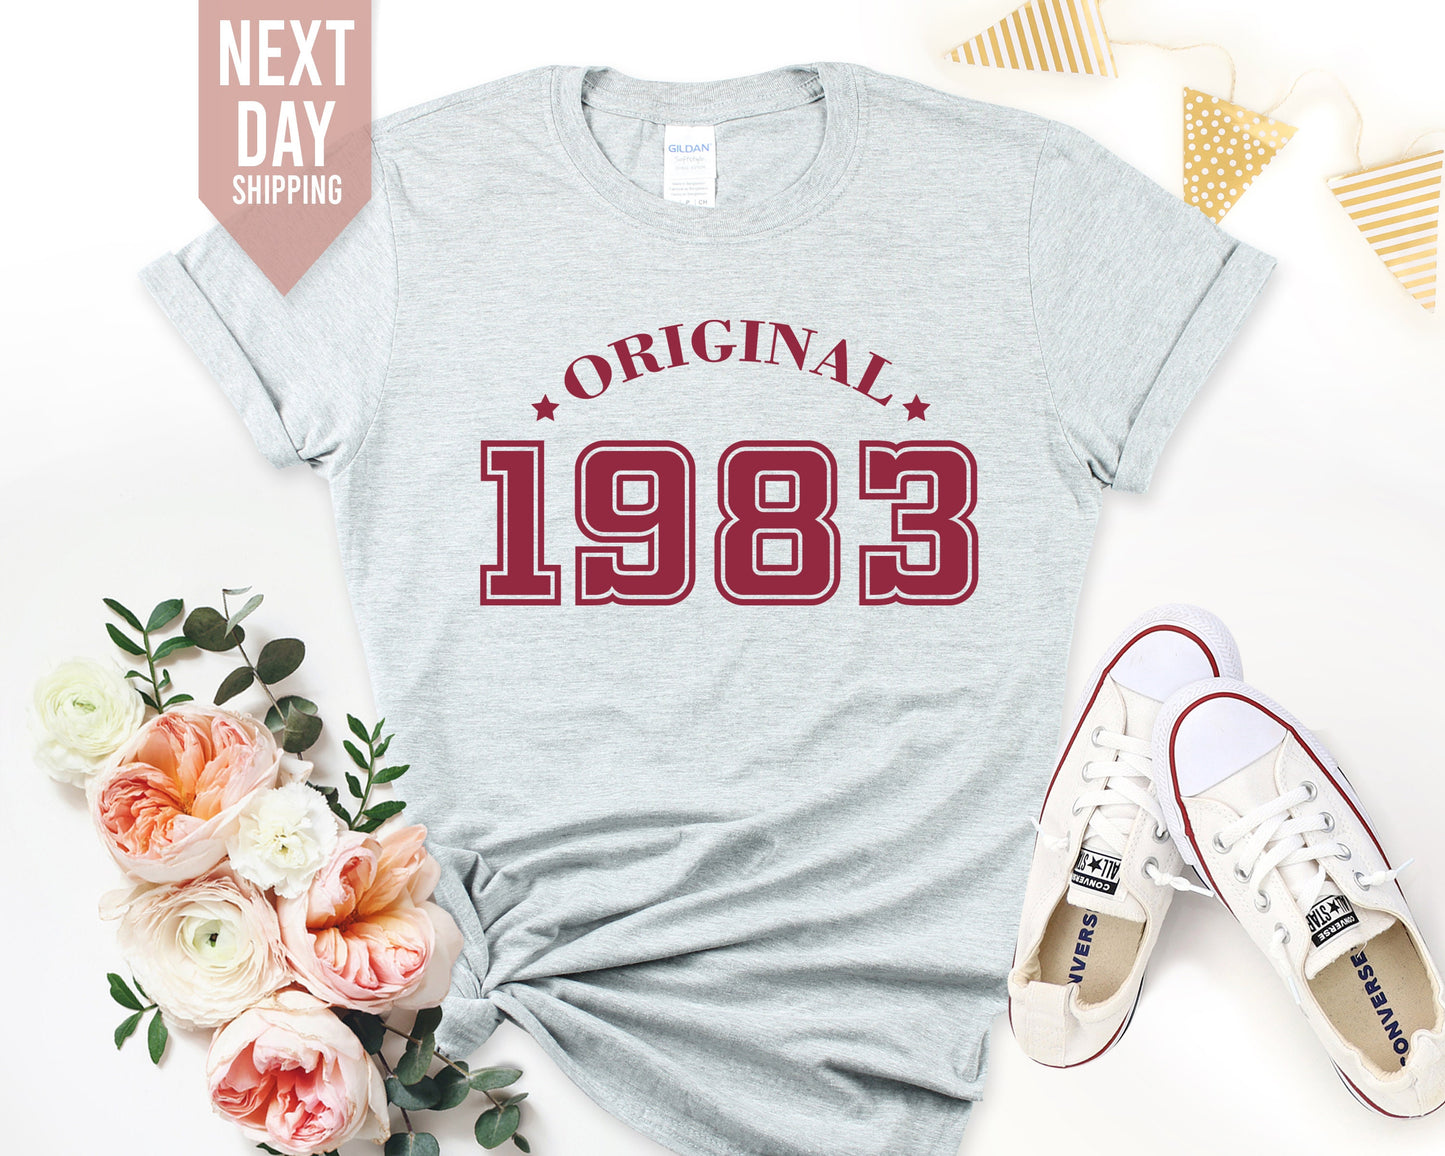 1983 Birthday TShirt for Women, 40th Birthday Tshirt Gift, Vintage 1983 Birthday Shirt, 40th Birthday Tshirt, Birthday Gift for Mum